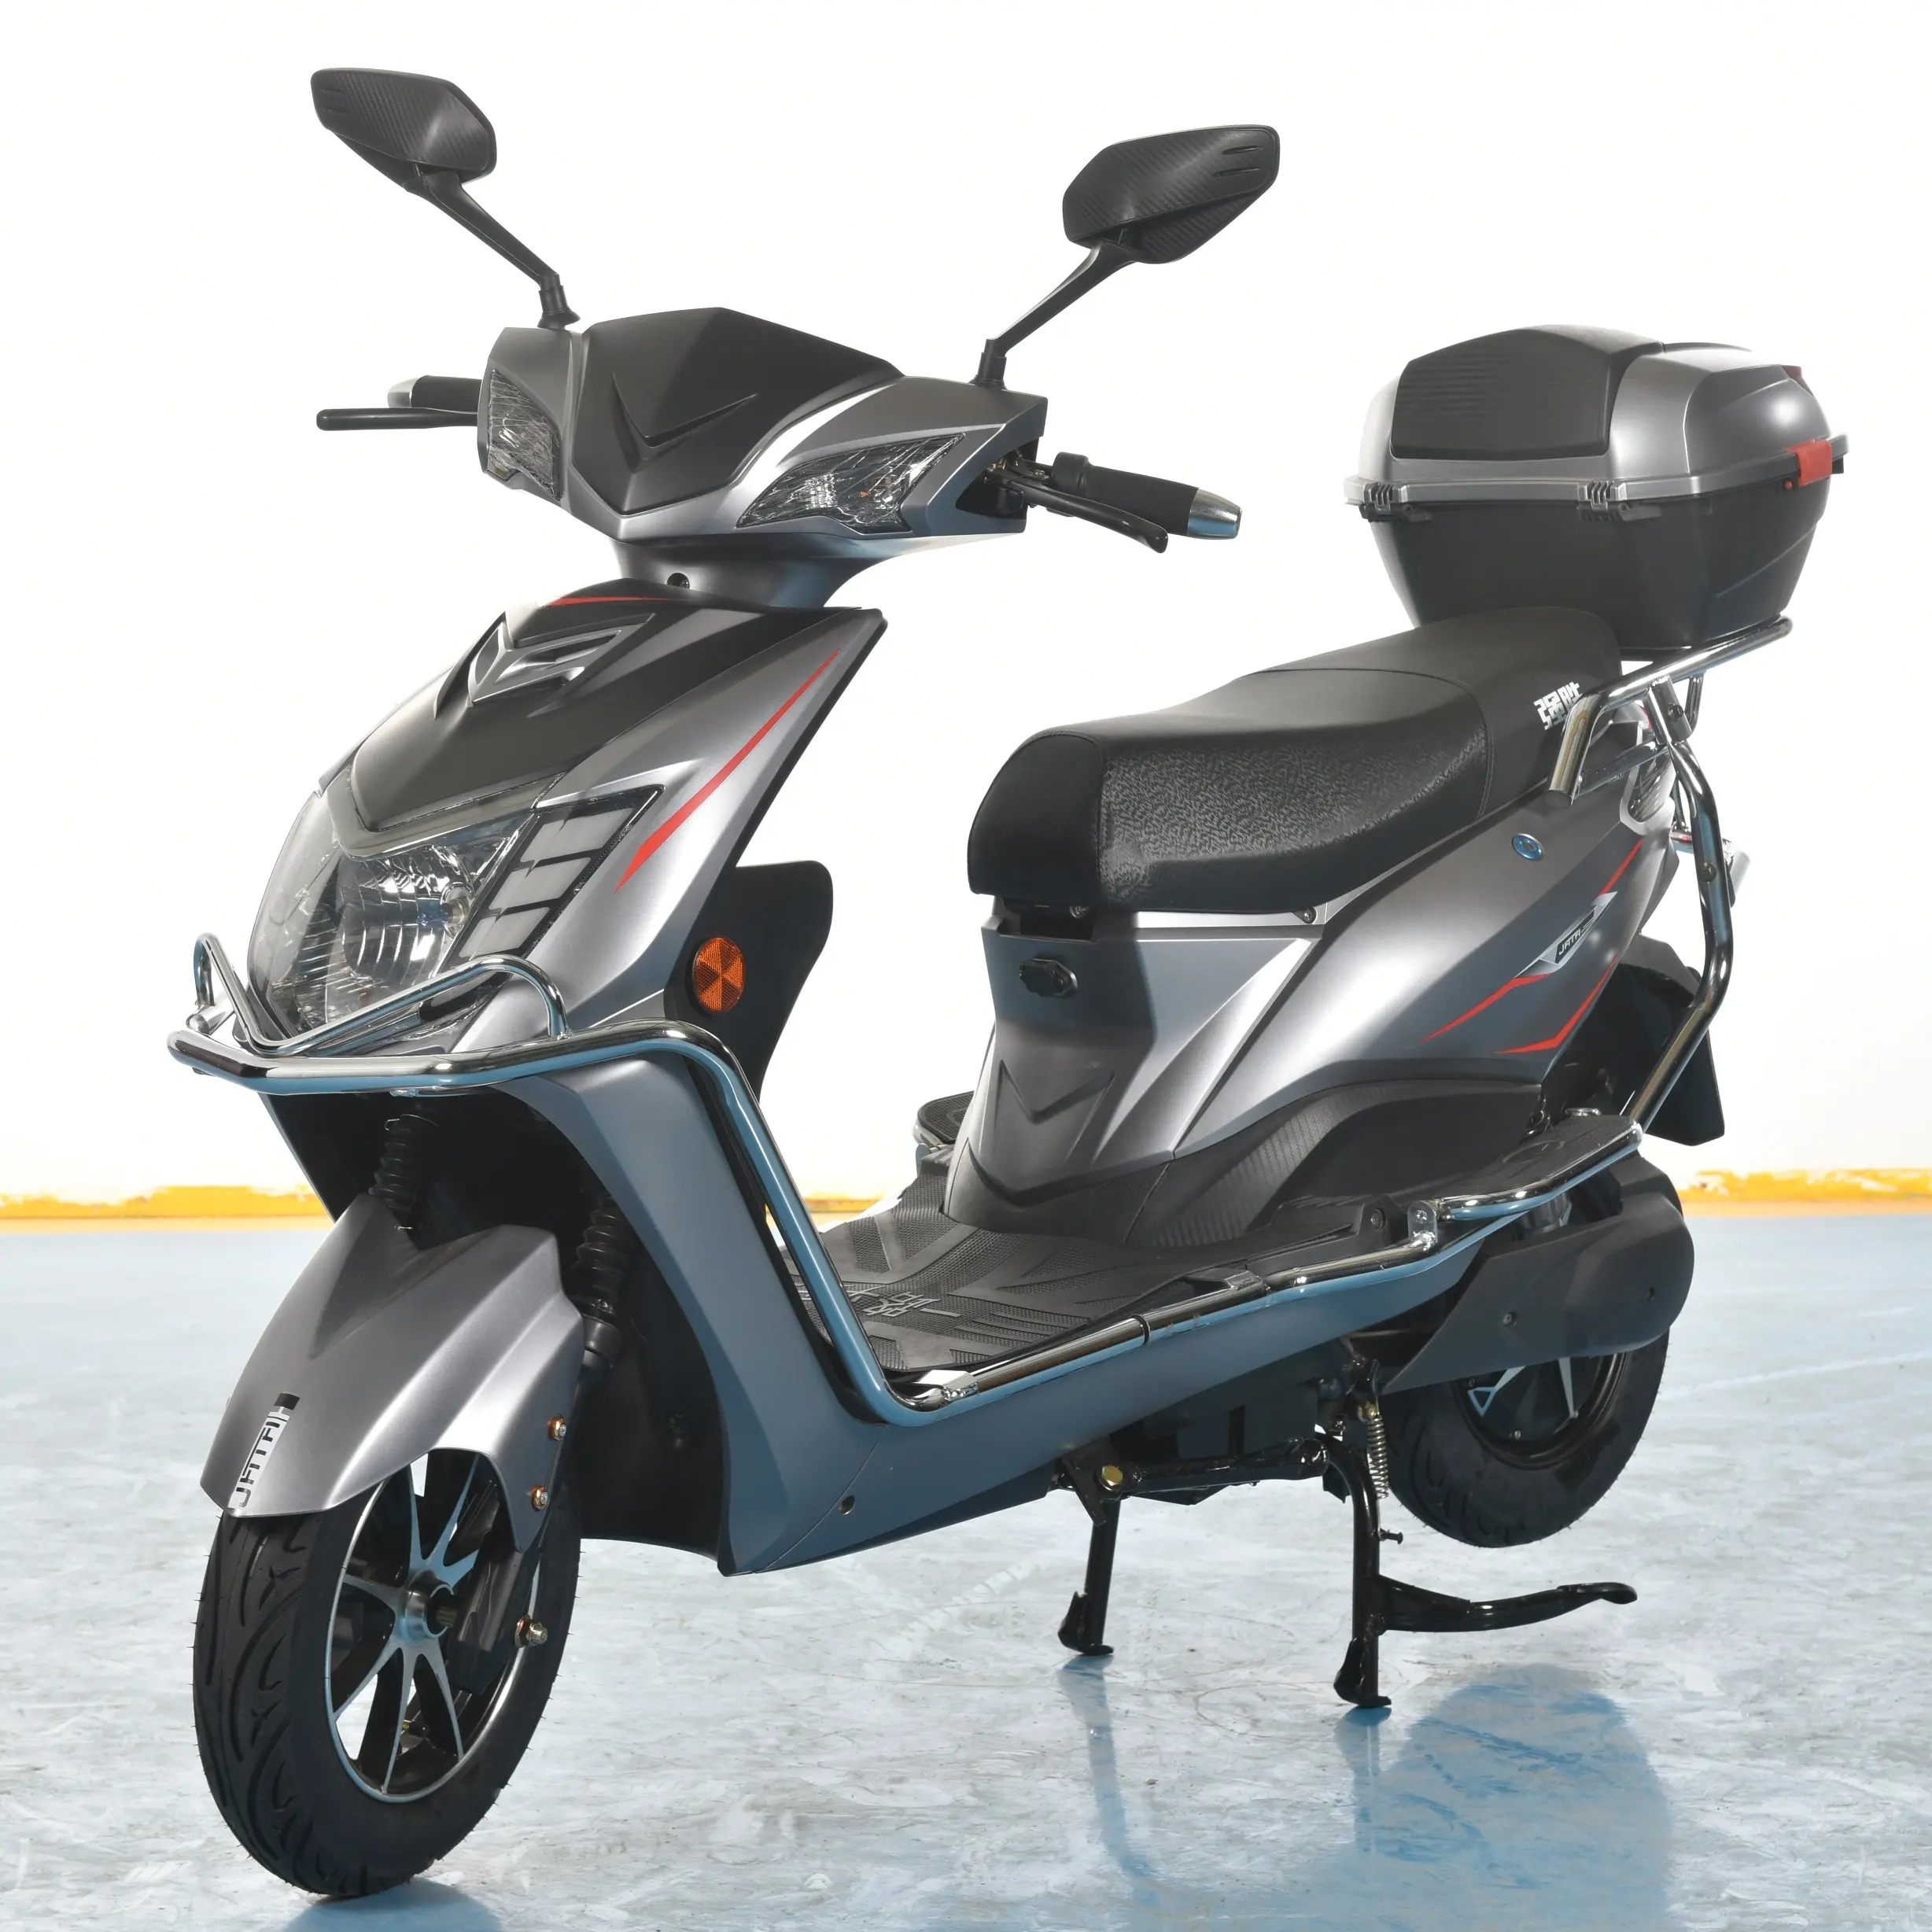 नई डिजाइन 1200W मजबूत शक्ति ई बाइक फैक्टरी थोक सस्ते फैशन स्कूटर बिजली की मोटर साइकिल रेसिंग मोटरसाइकिल